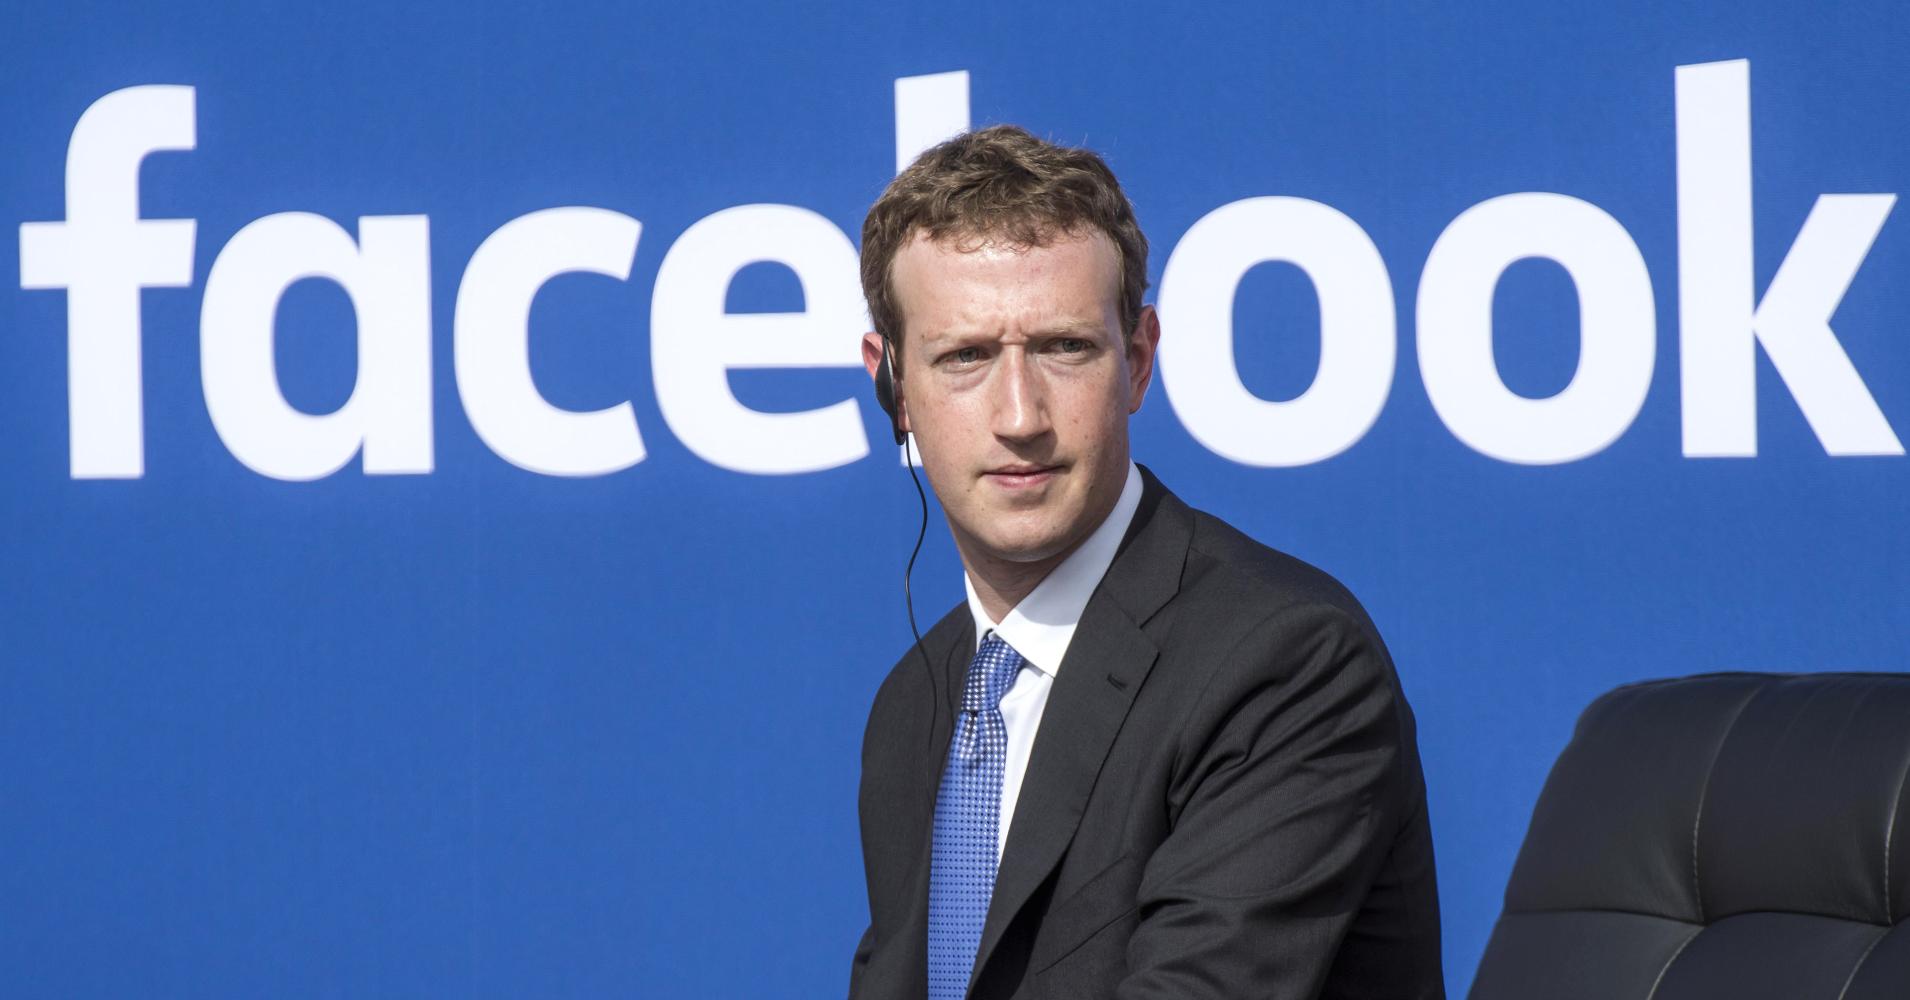 Цукерберг считает, что Facebook лучше подготовлен к борьбе с вмешательством в выборы, чем два года назад